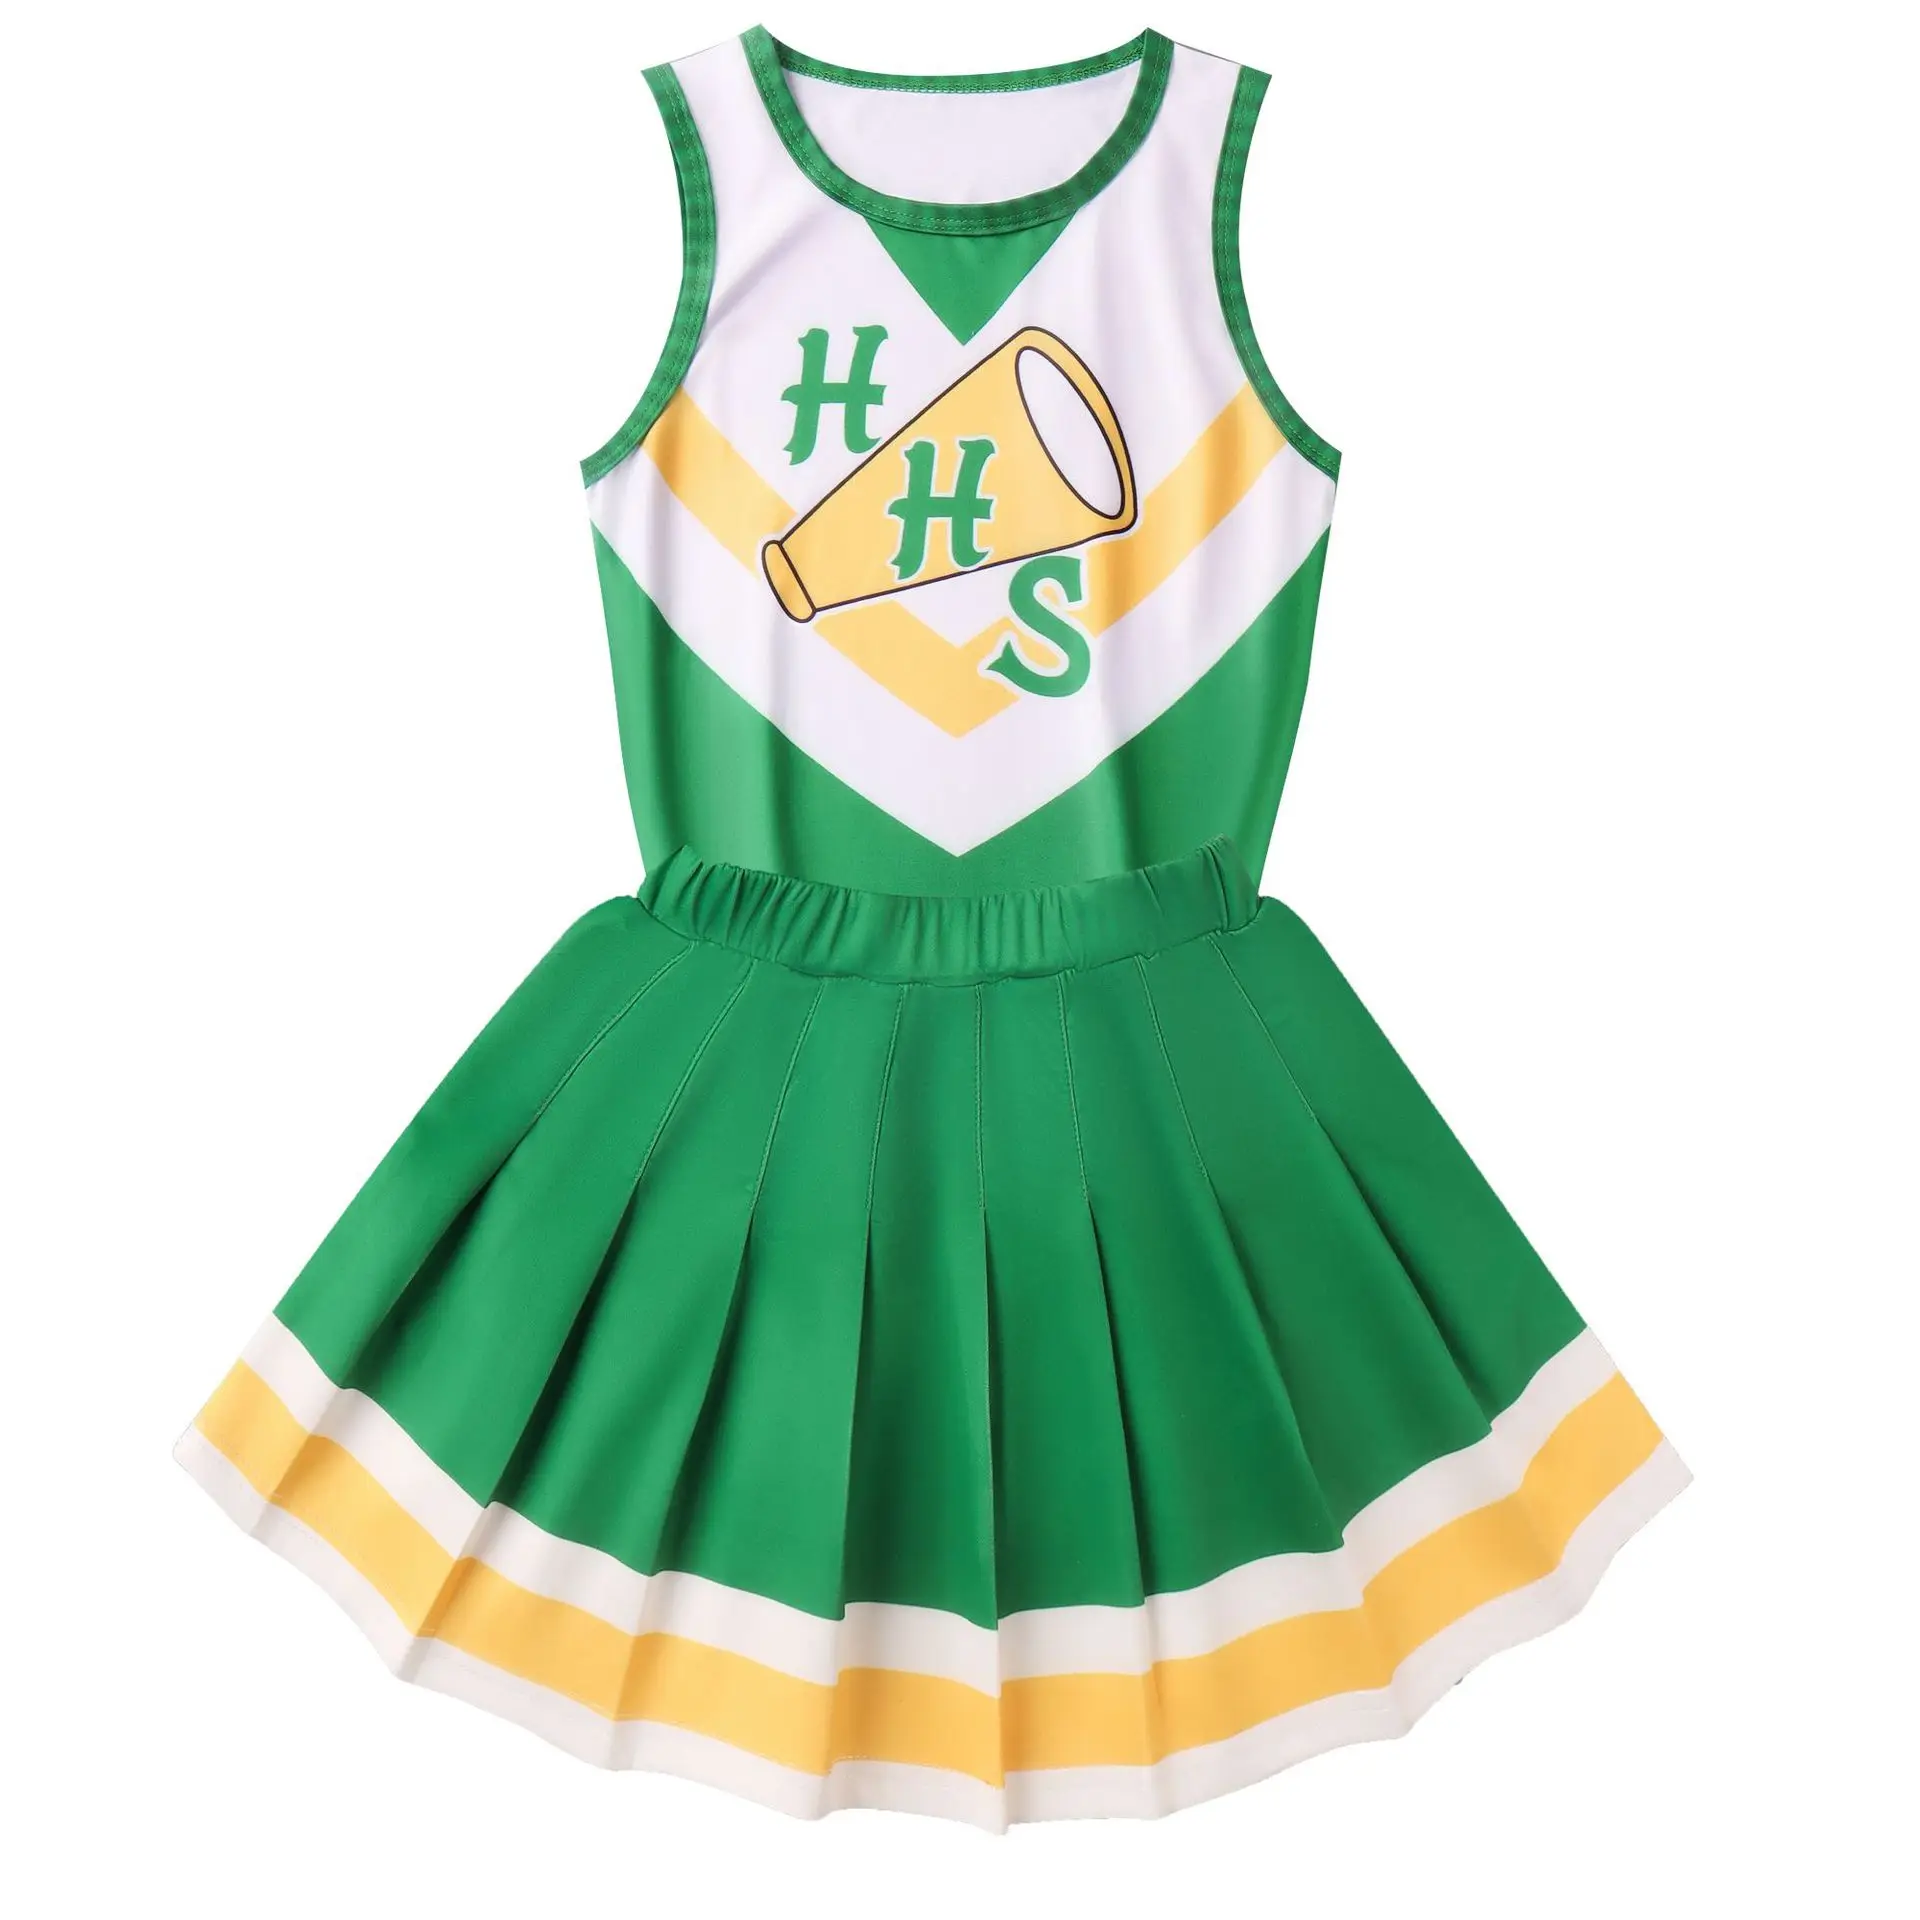 

Stranger Things Season 4 Chrissy Cunningham Cheerleader Cosplay Hawkins High School Costume Skirt Uniform Suit Adult kids Gift